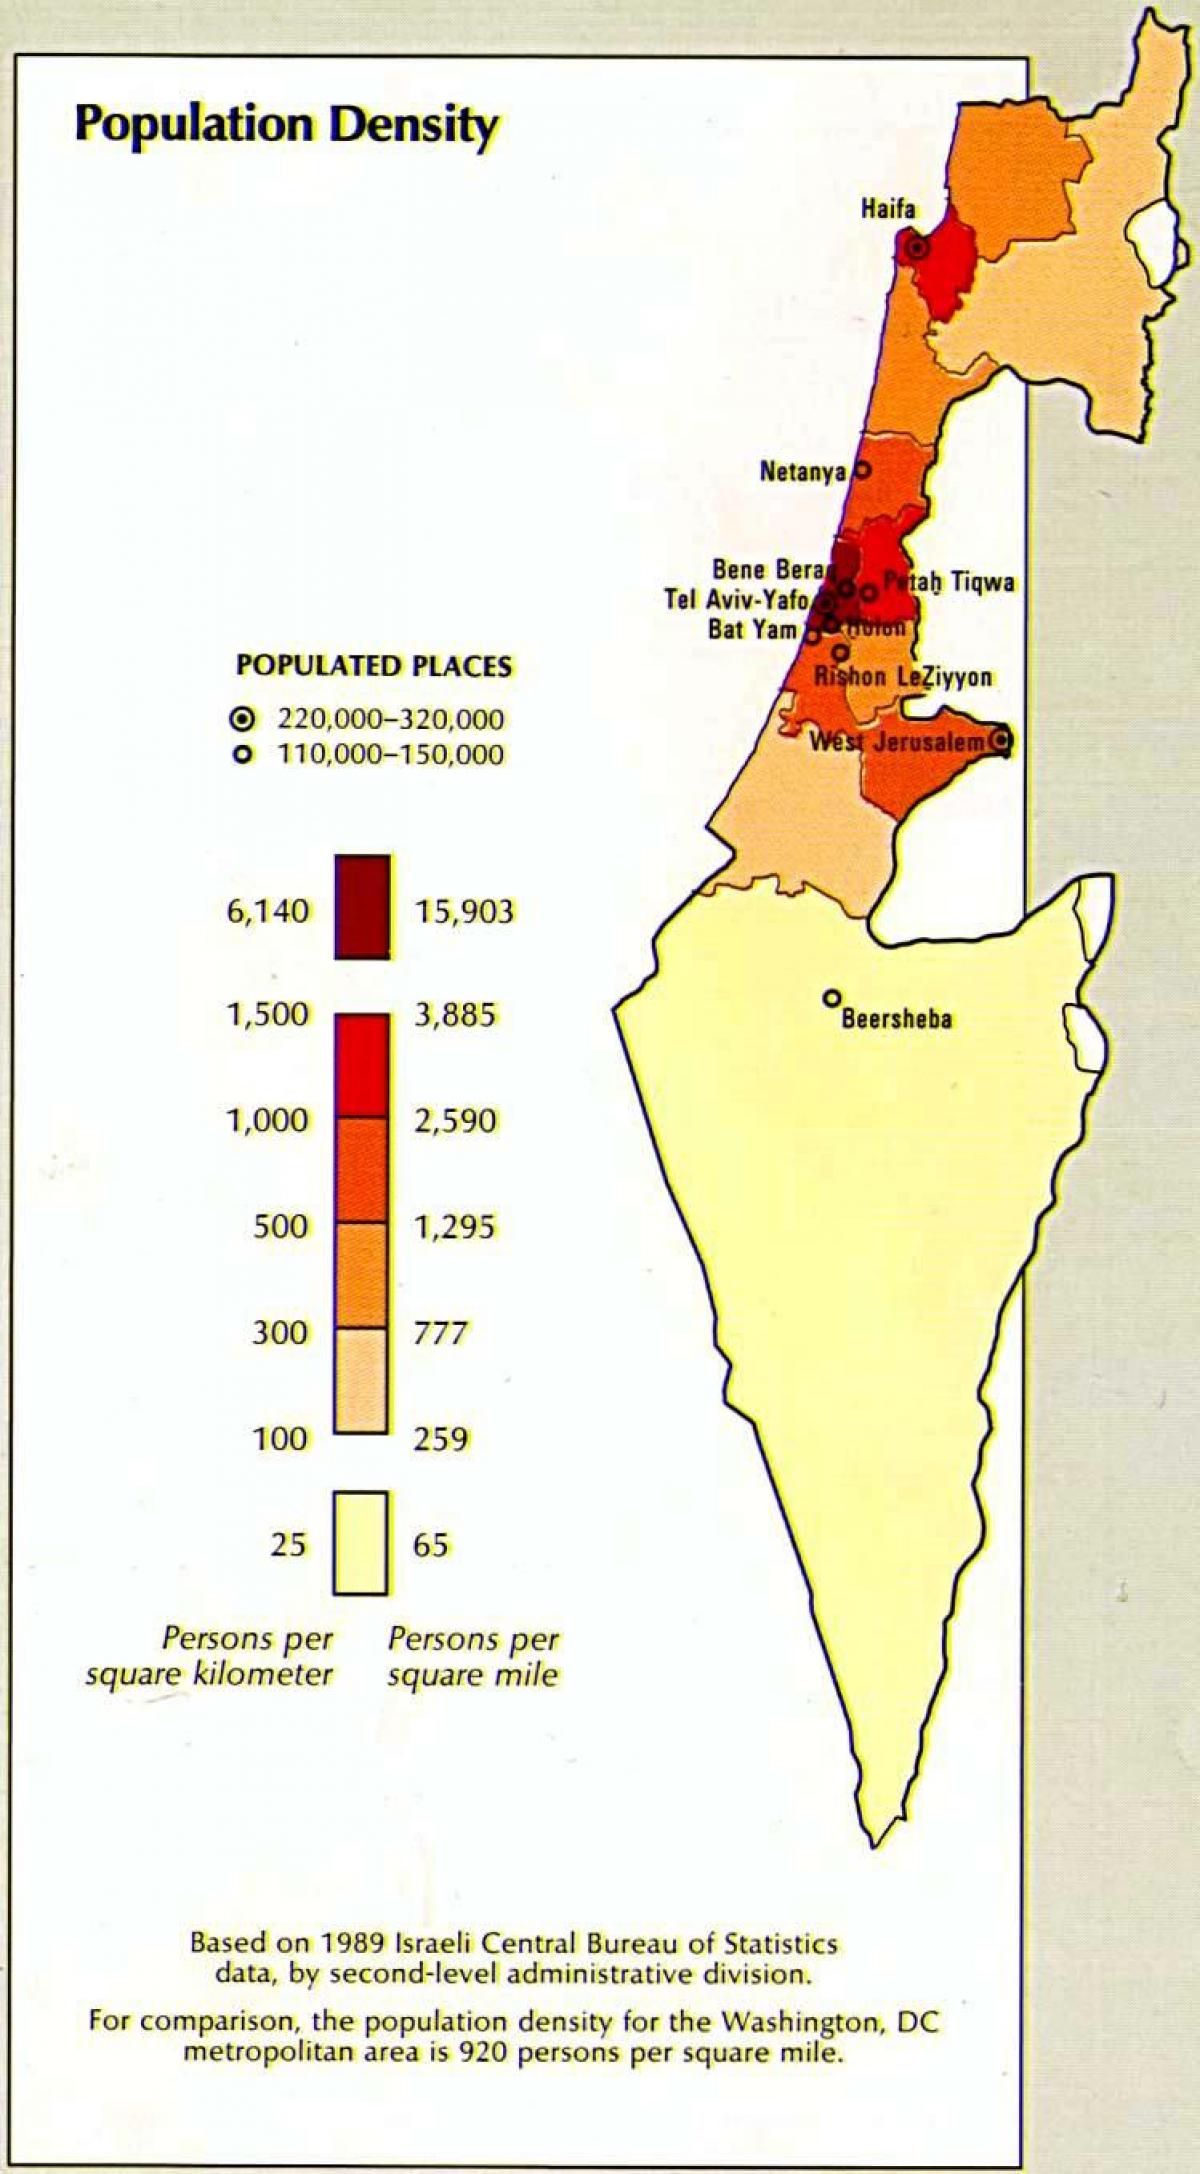 térkép izrael népesség